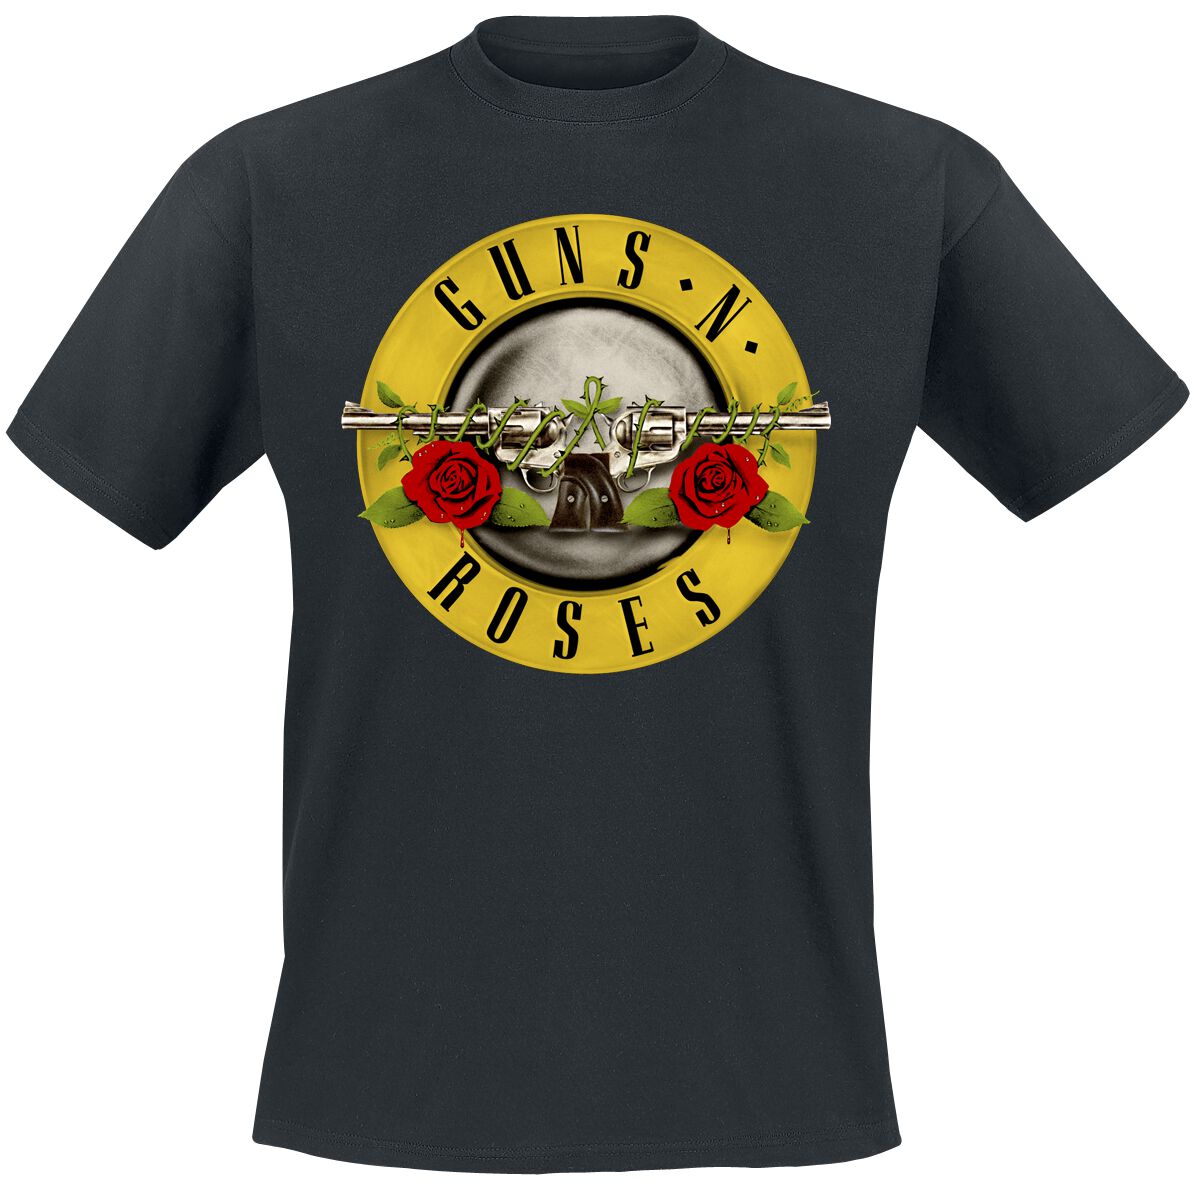 Guns N` Roses T-Shirt - Distressed Bullet - S bis 4XL - für Männer - Größe 4XL - schwarz  - Lizenziertes Merchandise!